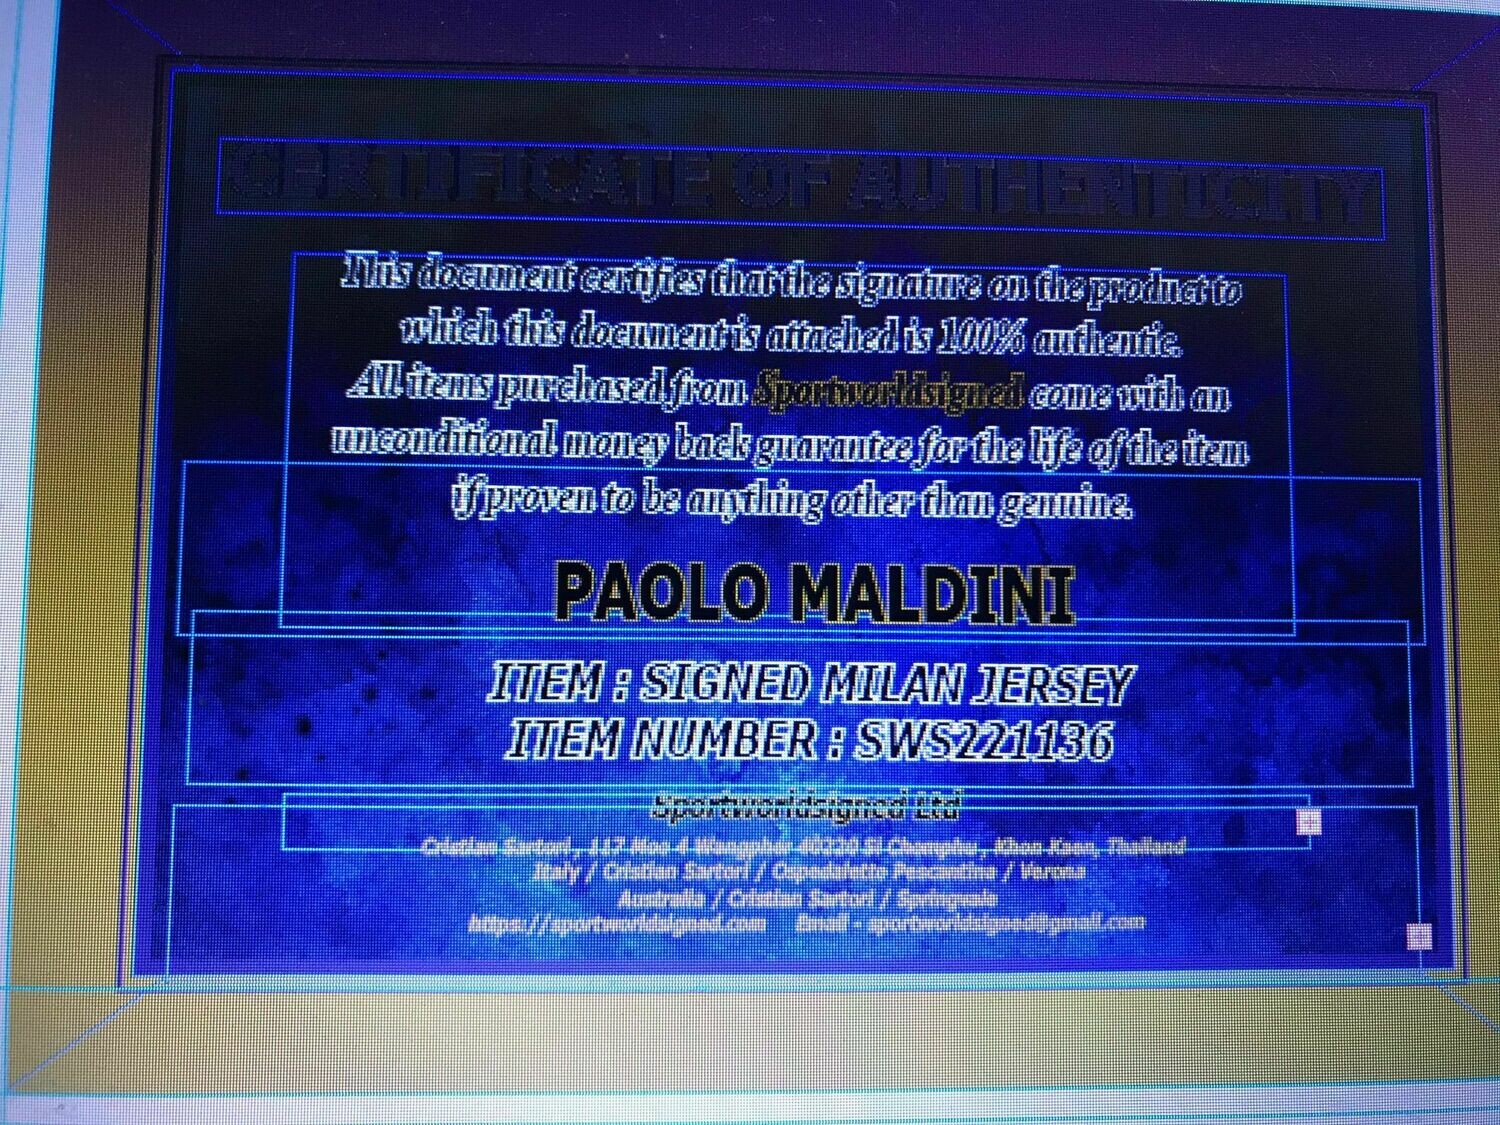 Maglia PAOLO MALDINI AC MILAN Autografata MALDINI PAOLO AC MILAN  HAND SIGNED AUTOGRAPH AC MILAN MALDINI   JERSEY MALDINI PAOLO  SIGNED AUTOGRAPH  SWS221136